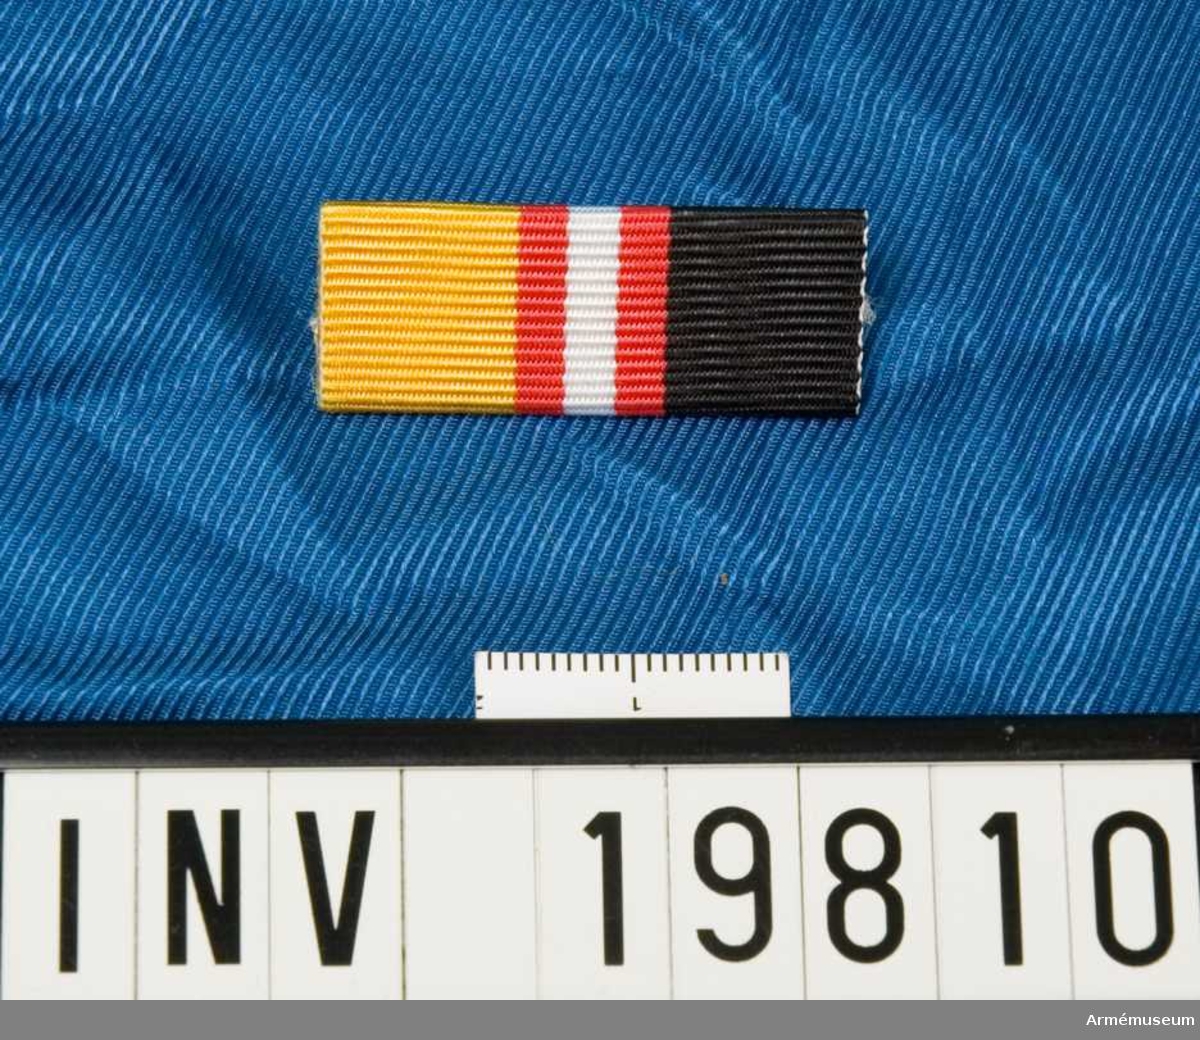 Band kluvet i svart och gult med en vit rand i mitten åtföljd av en röd rand på vardera sidan. Släpspännet förvaras i ask tillsammans med en medalj och en miniatyrmedalj.